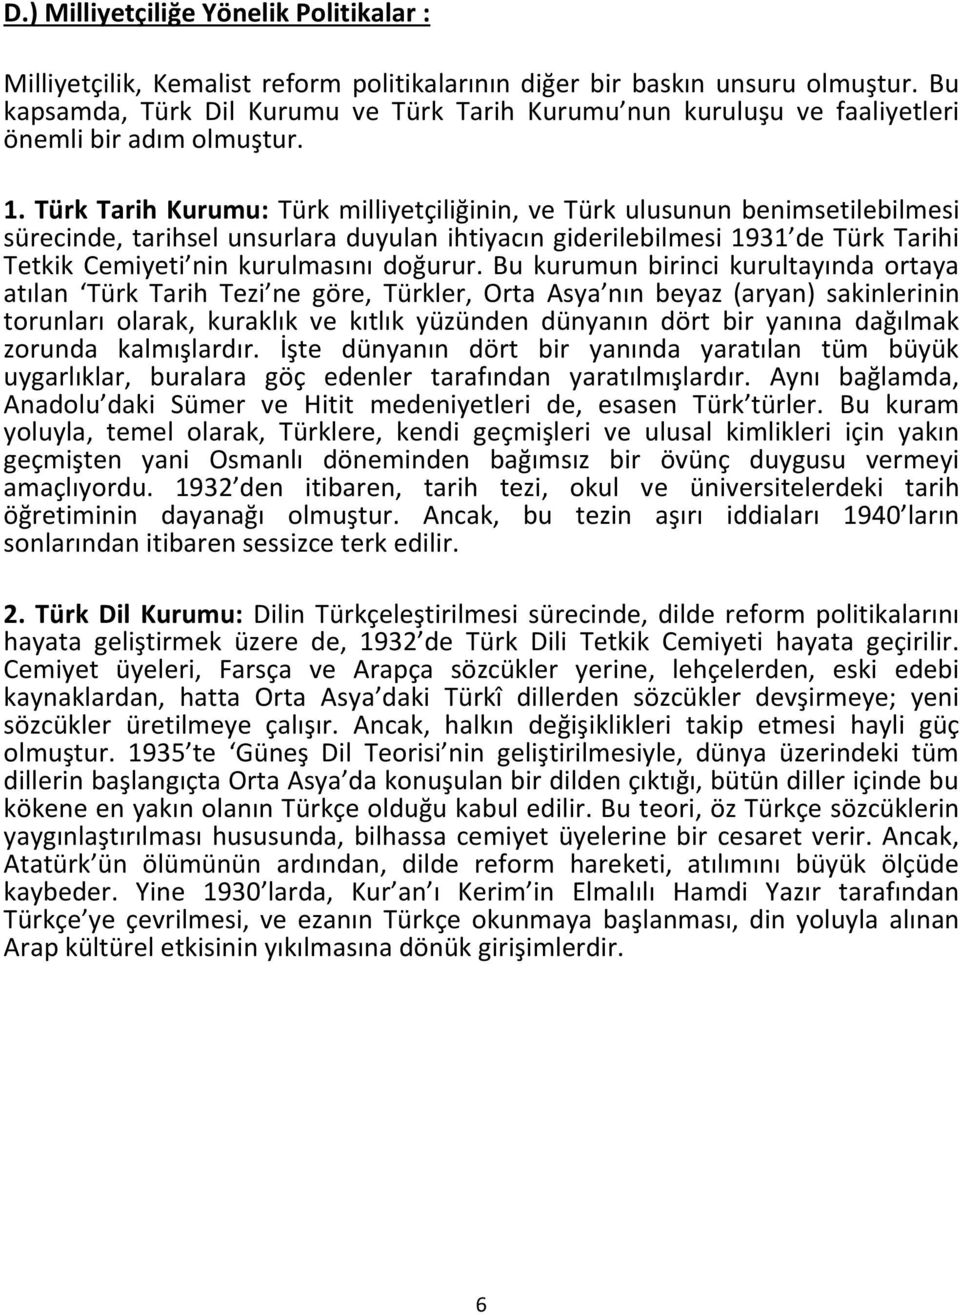 Türk Tarih Kurumu: Türk milliyetçiliğinin, ve Türk ulusunun benimsetilebilmesi sürecinde, tarihsel unsurlara duyulan ihtiyacın giderilebilmesi 1931 de Türk Tarihi Tetkik Cemiyeti nin kurulmasını